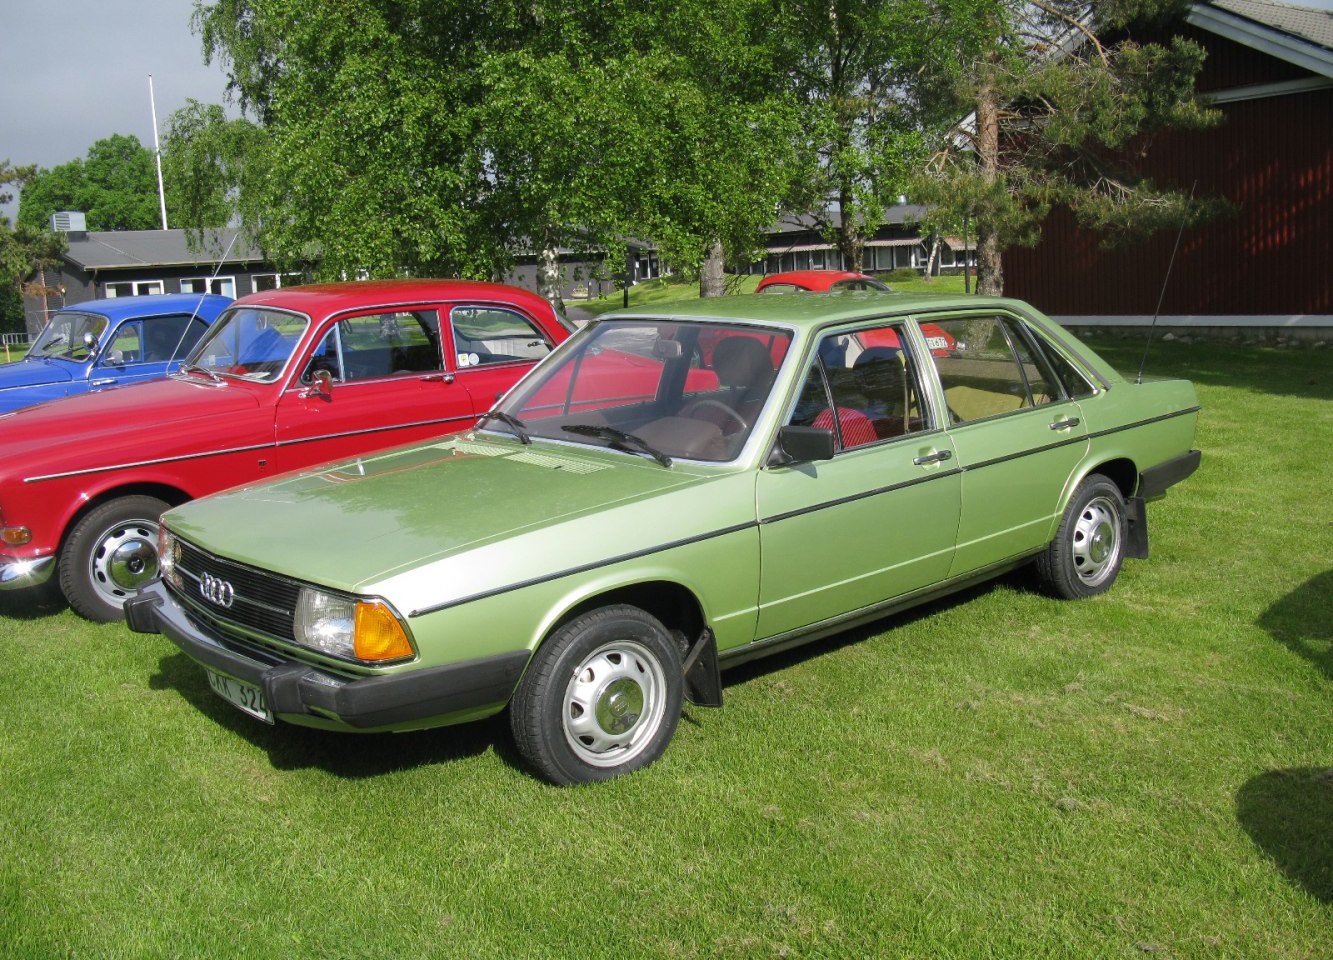 115 лс. Audi 100 c2 Typ 43. "Audi" "100" "1977" uw. Audi 100 1979. "Audi" "100" "1979" YP.